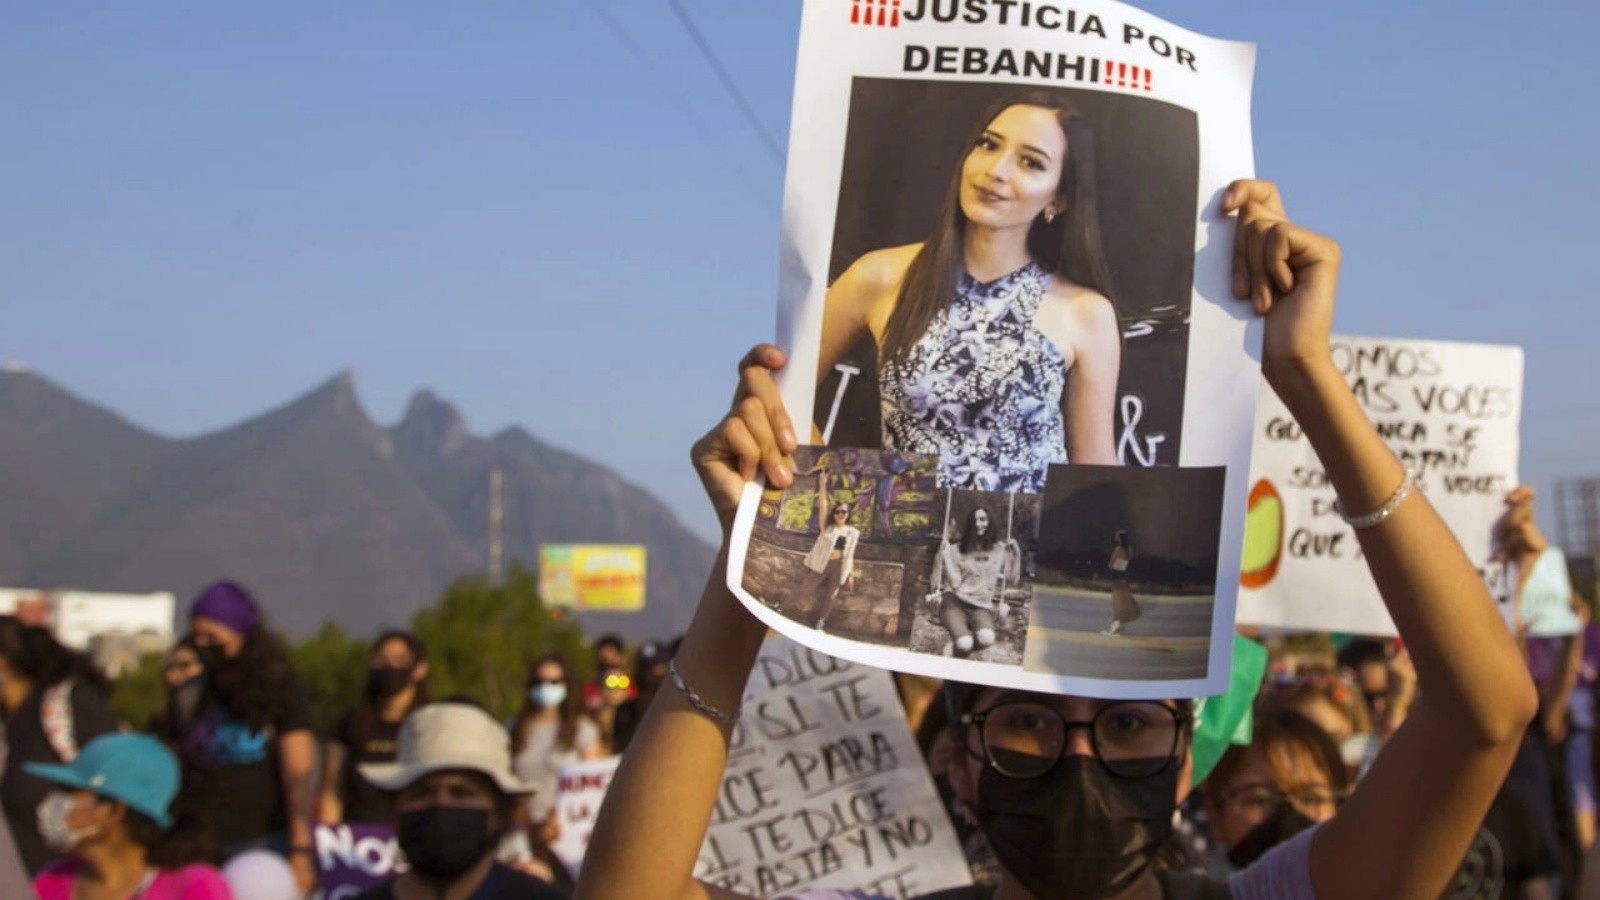 متظاهر يحمل صورة للطالبة ديبانهي إسكوبار البالغة من العمر 18 عامًا والتي أثارت وفاتها في شمال المكسيك موجة من الغضب